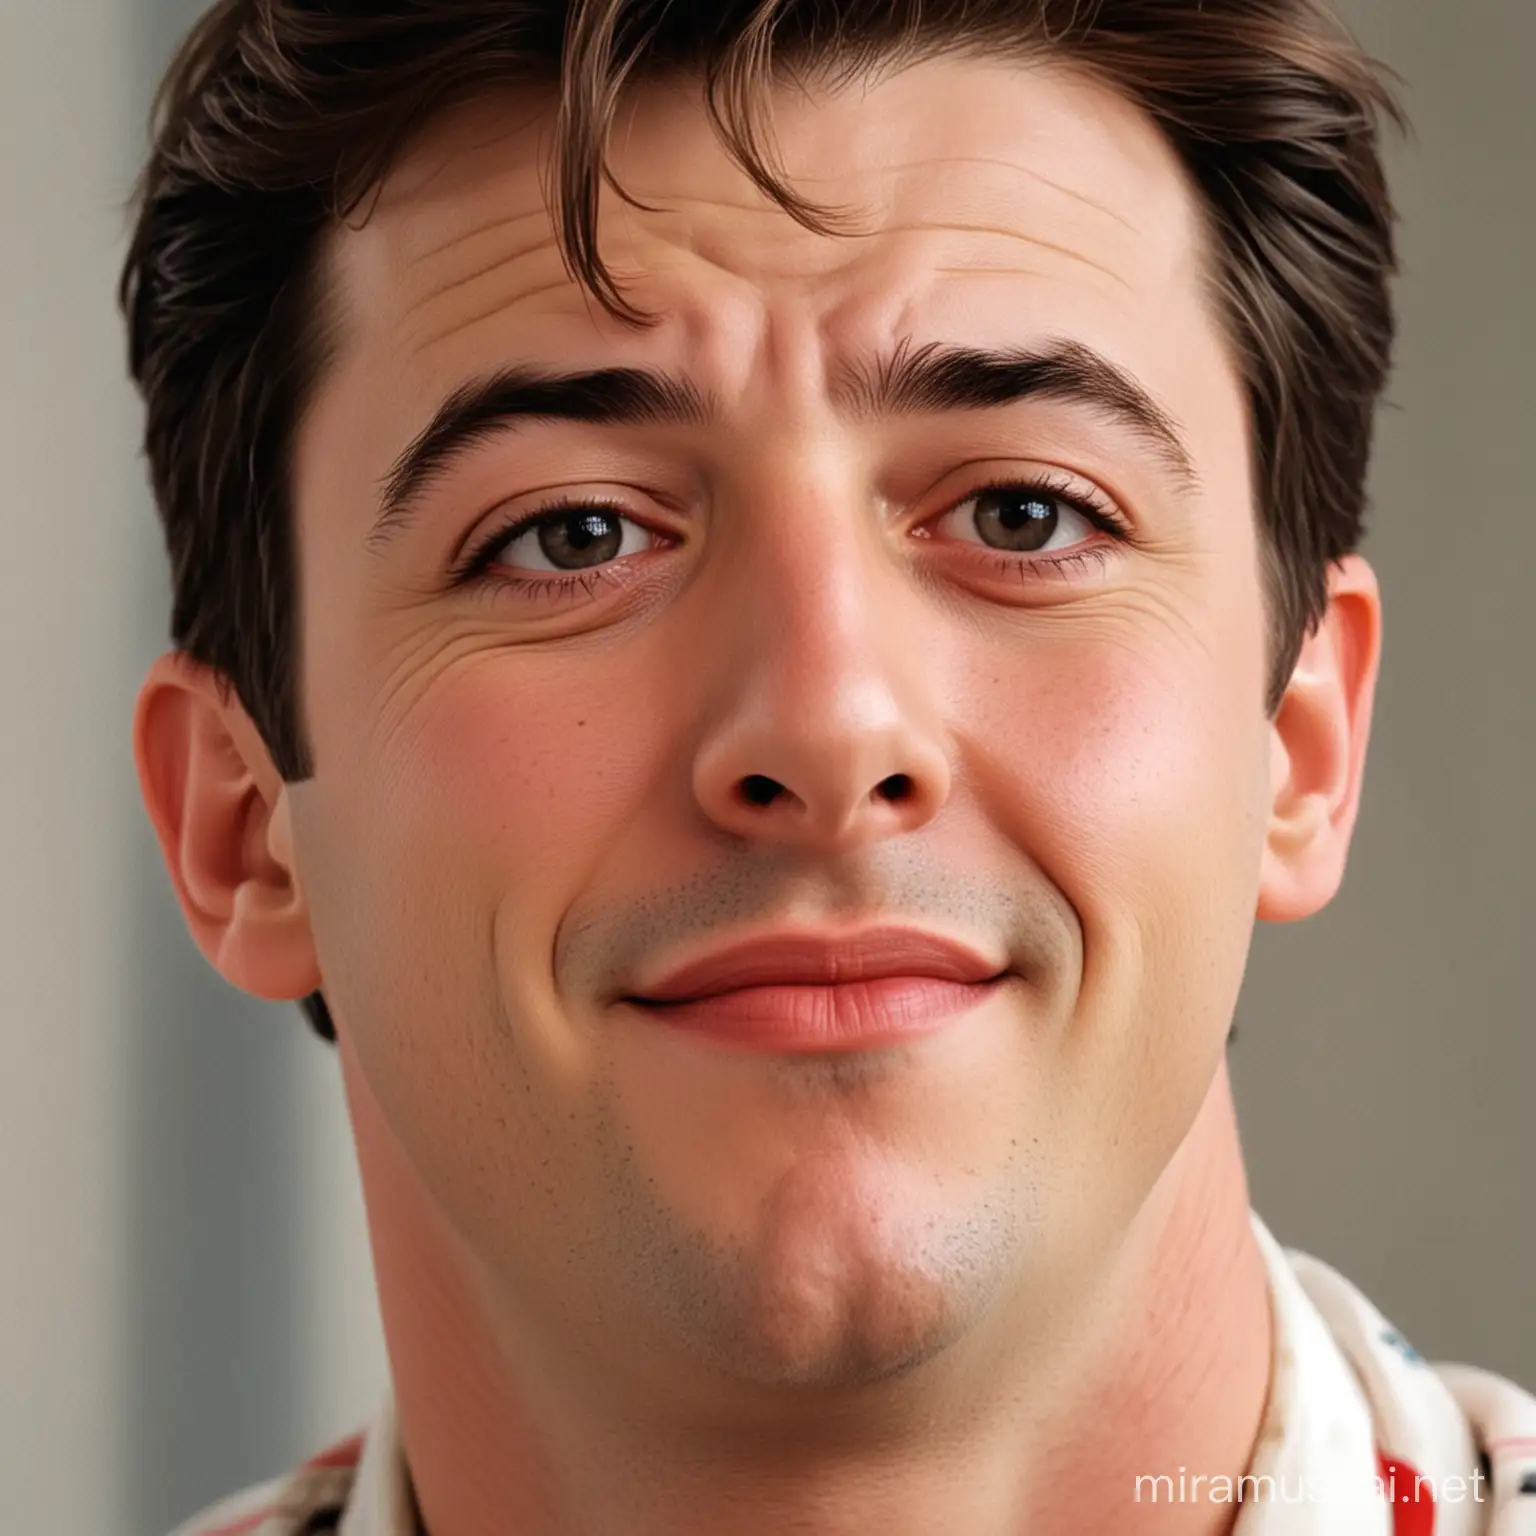 Ferris Bueller wink